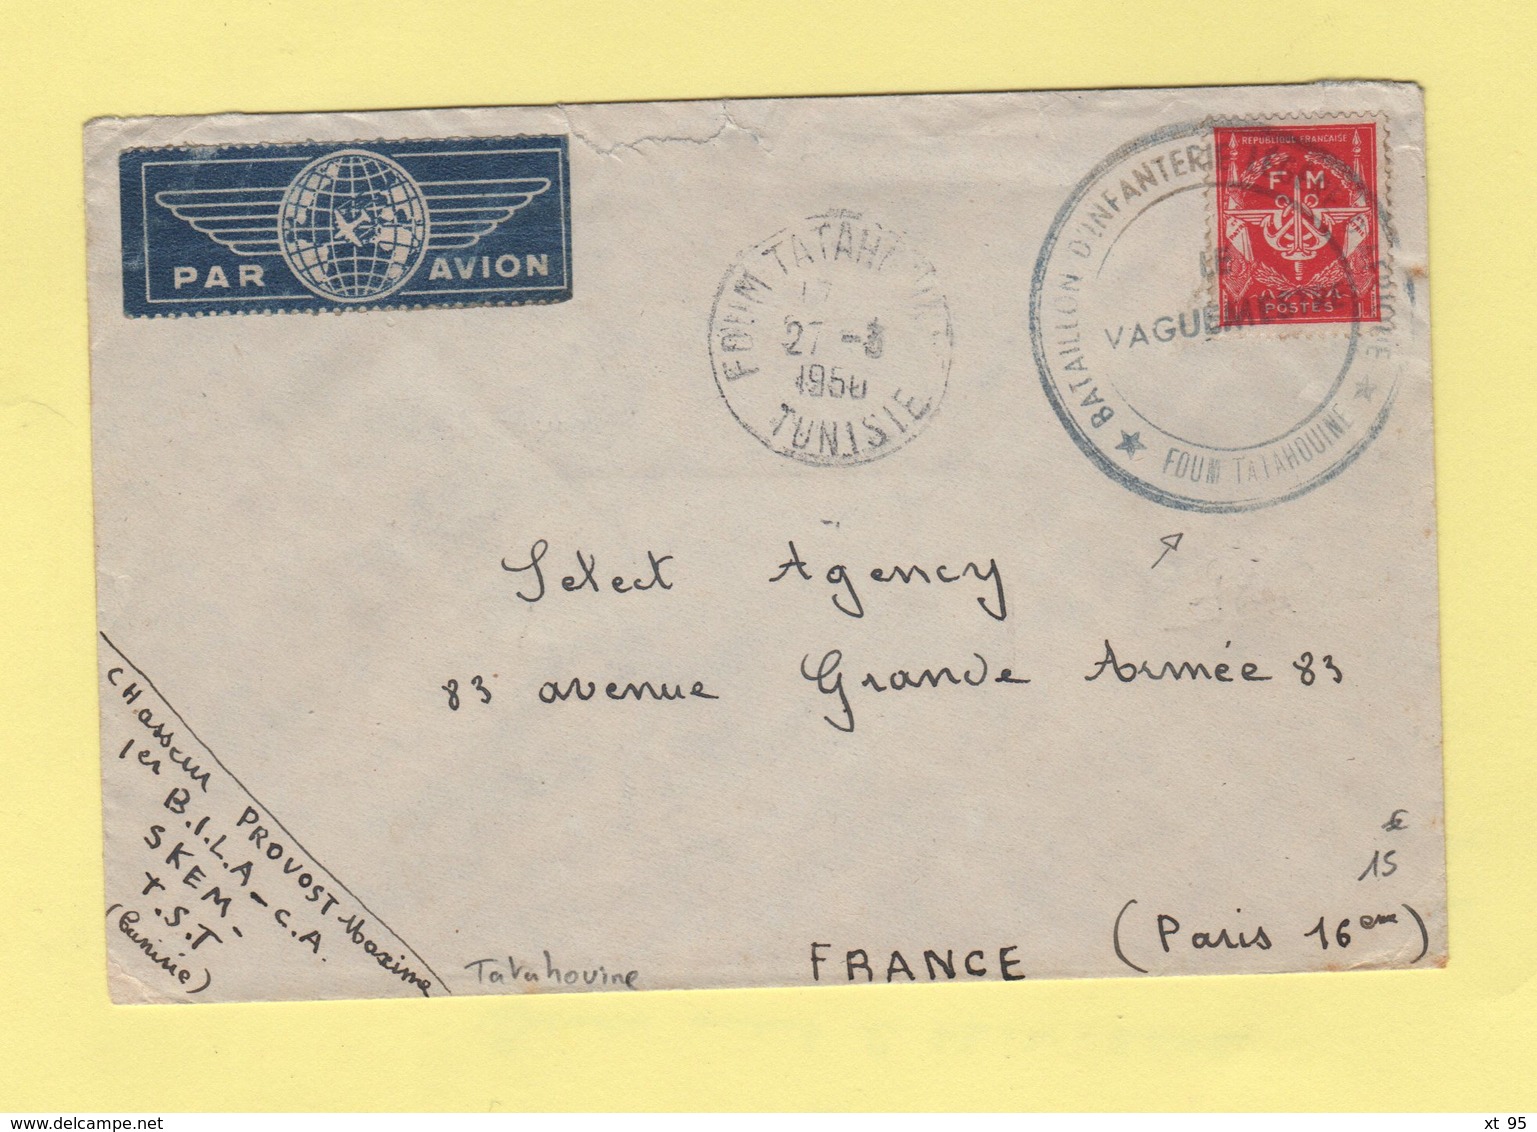 Timbre FM - Bataillon D'Infanterie Legere D'Afrique - Foum Tatahouine - Tunisie - 1950 - Military Postage Stamps